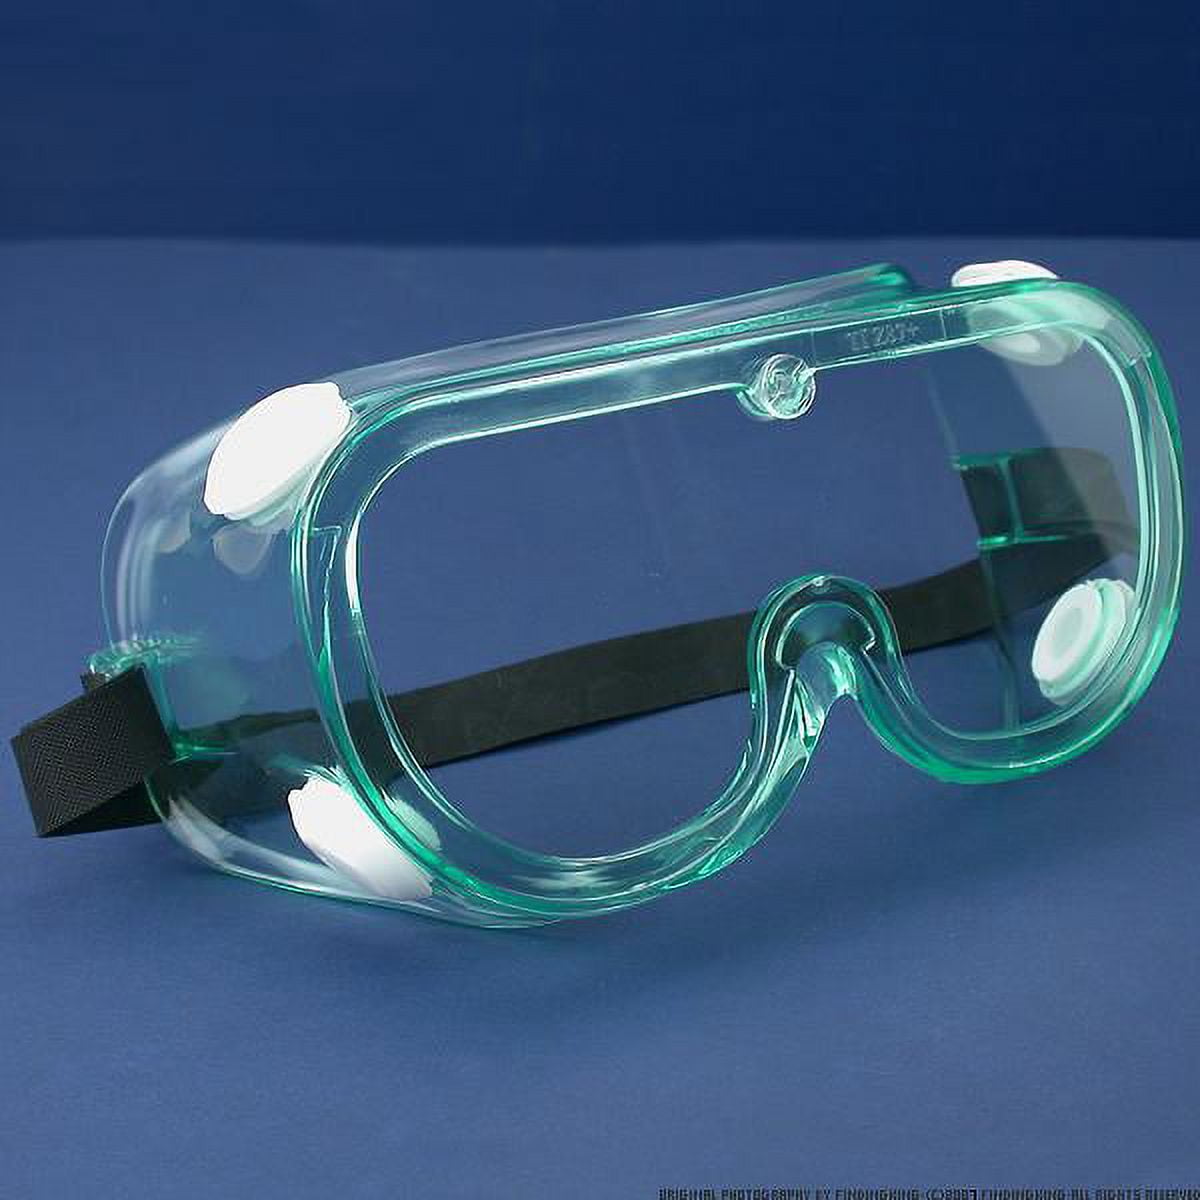 Очки защитные стеклянные. Очки Goggles v1. Очки лабораторные защитные. Очки для защиты глаз. Очки защитные медицинские.